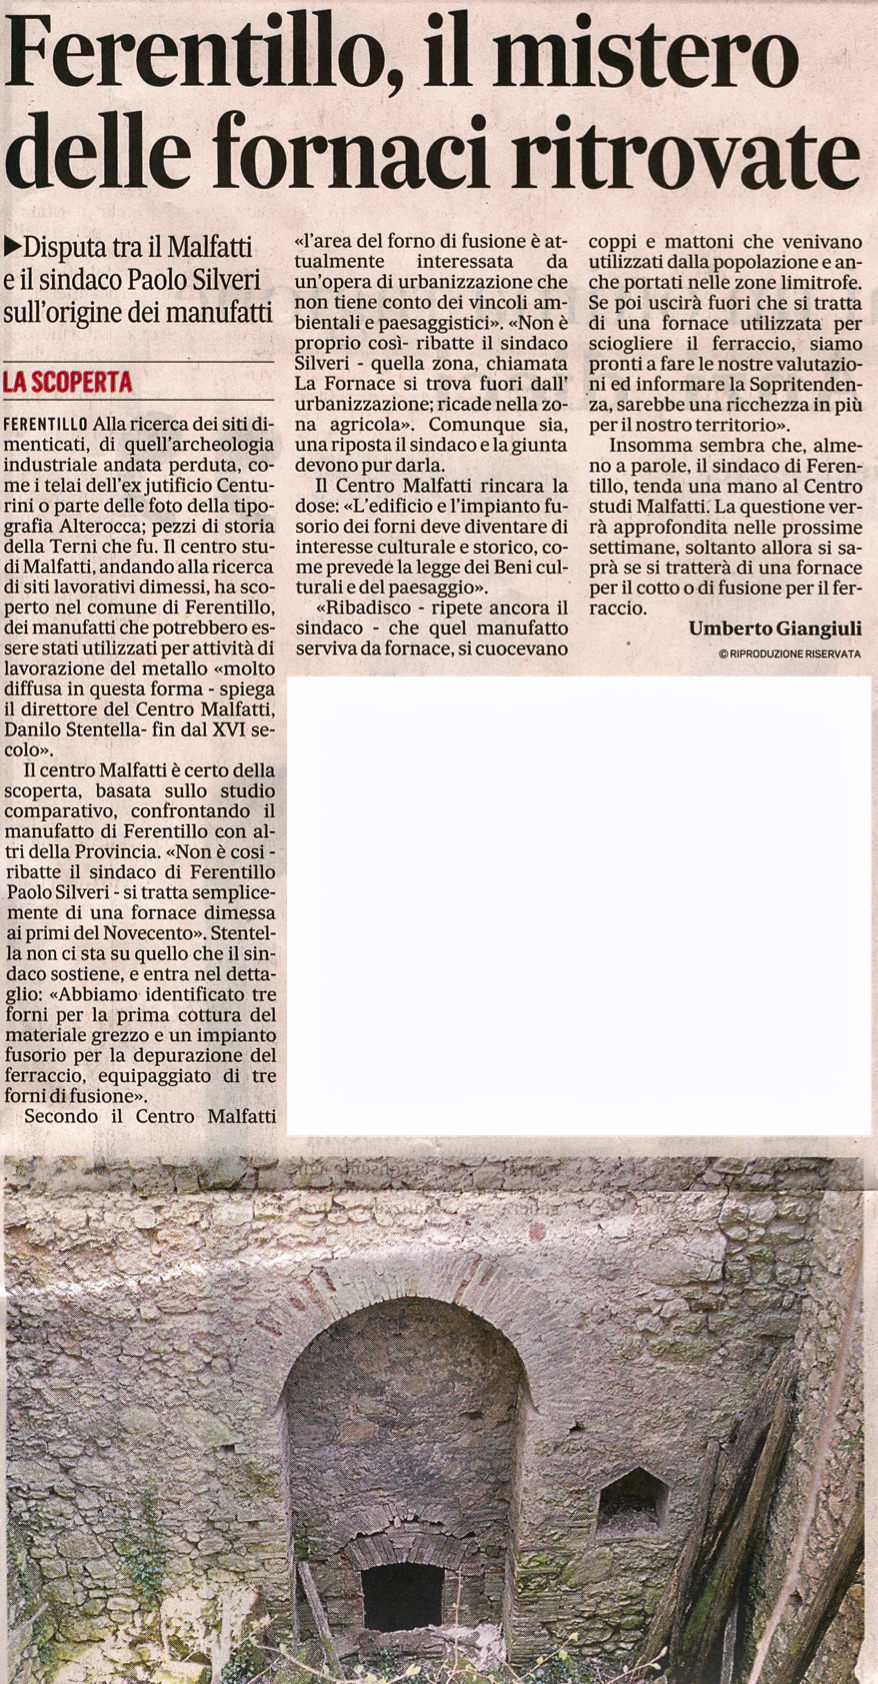 Articolo tratto da Il Messaggero del 03/01/2014